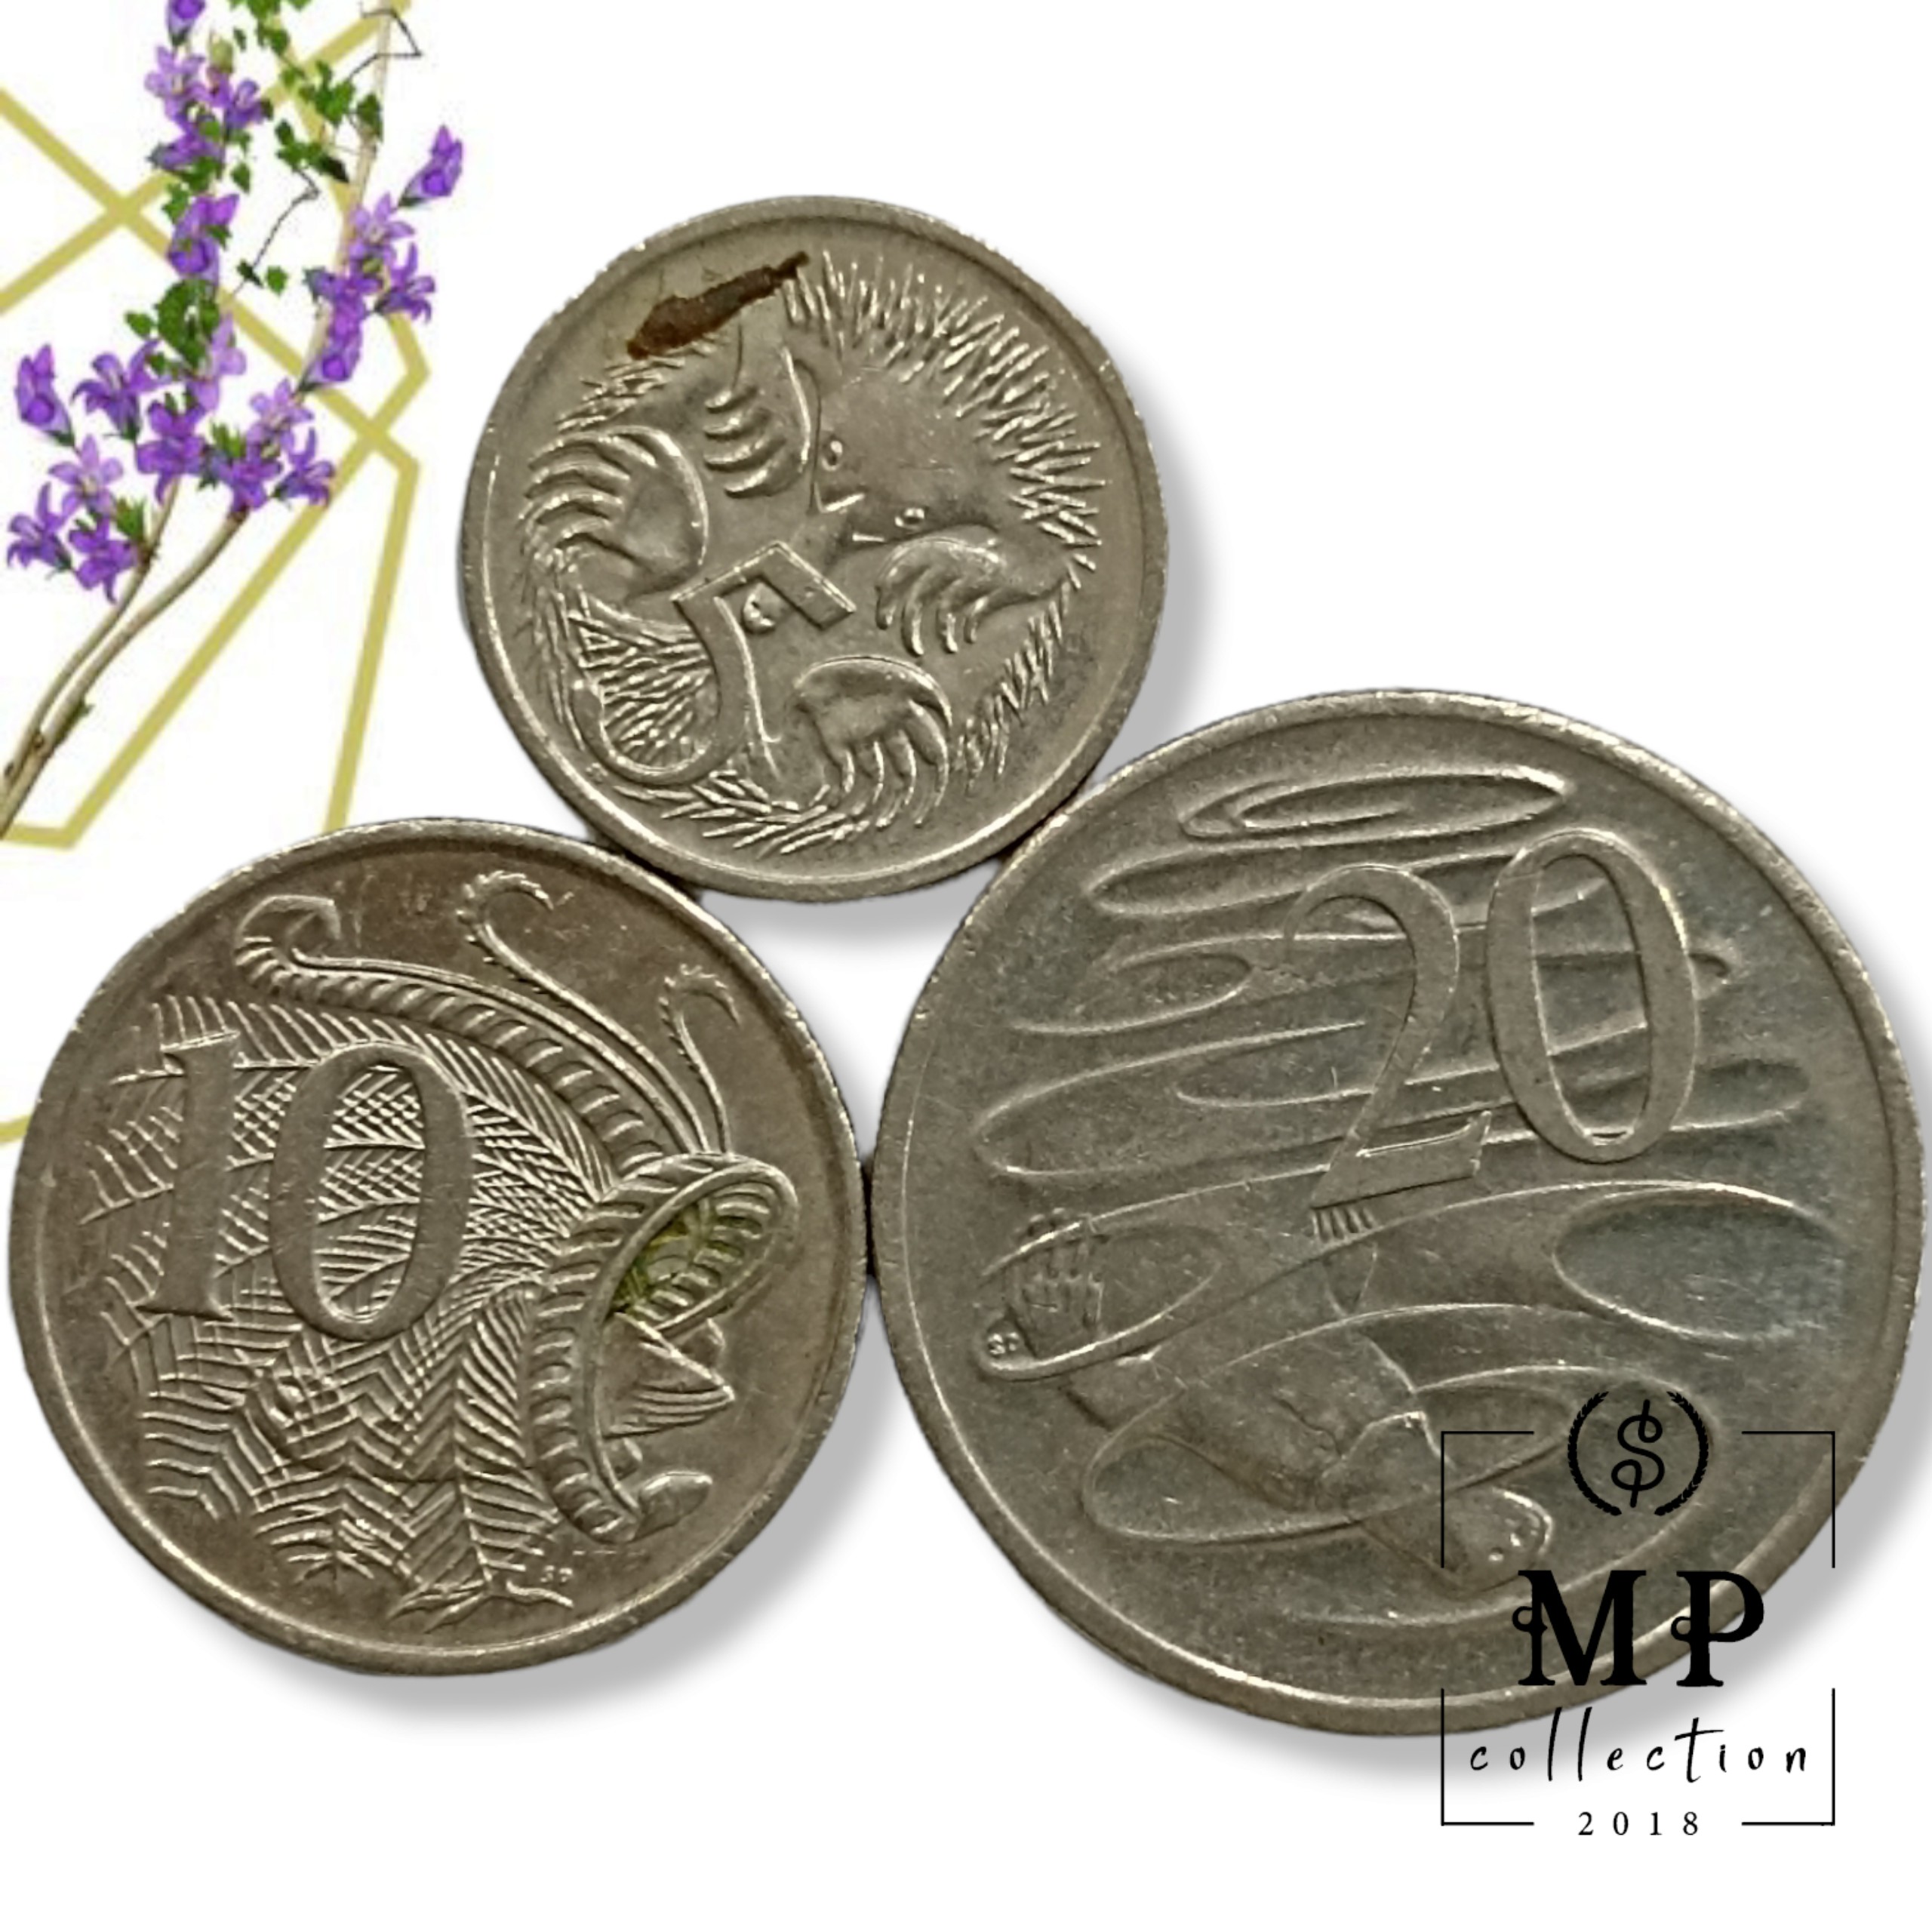 Bộ 3 Đồng xu Úc Australia khác nhau mệnh giá 5 10 20 cents các năm